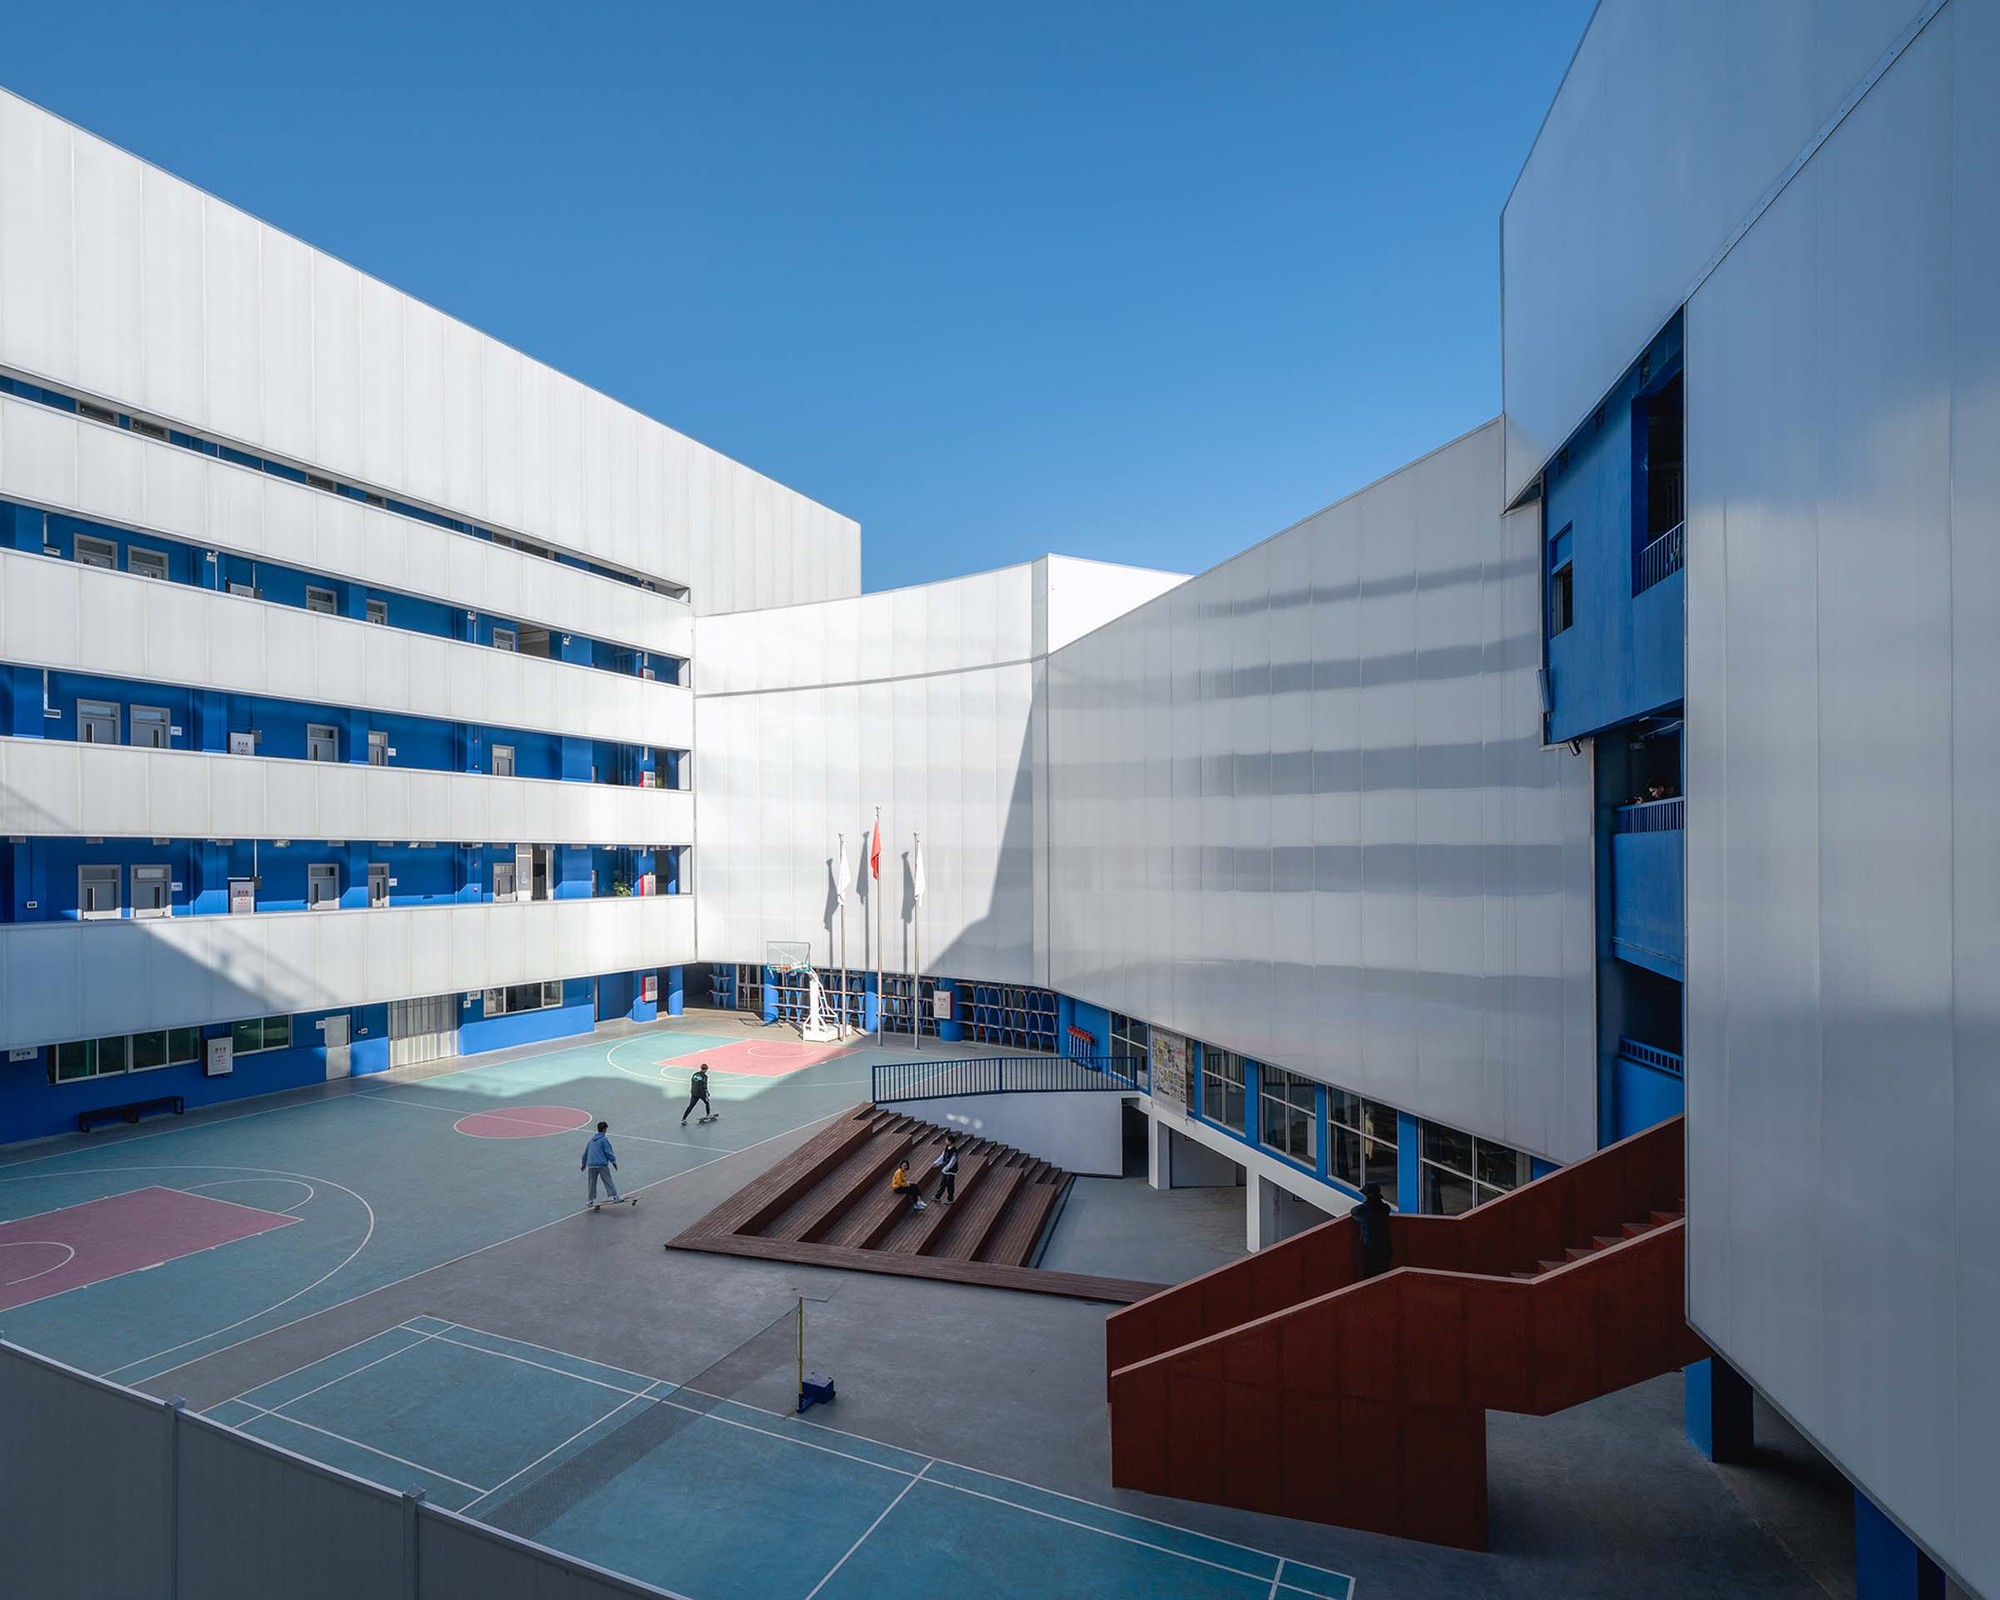 深圳蓝白艺术院校 / 万社设计|ART-Arrakis | 建筑室内设计的创新与灵感